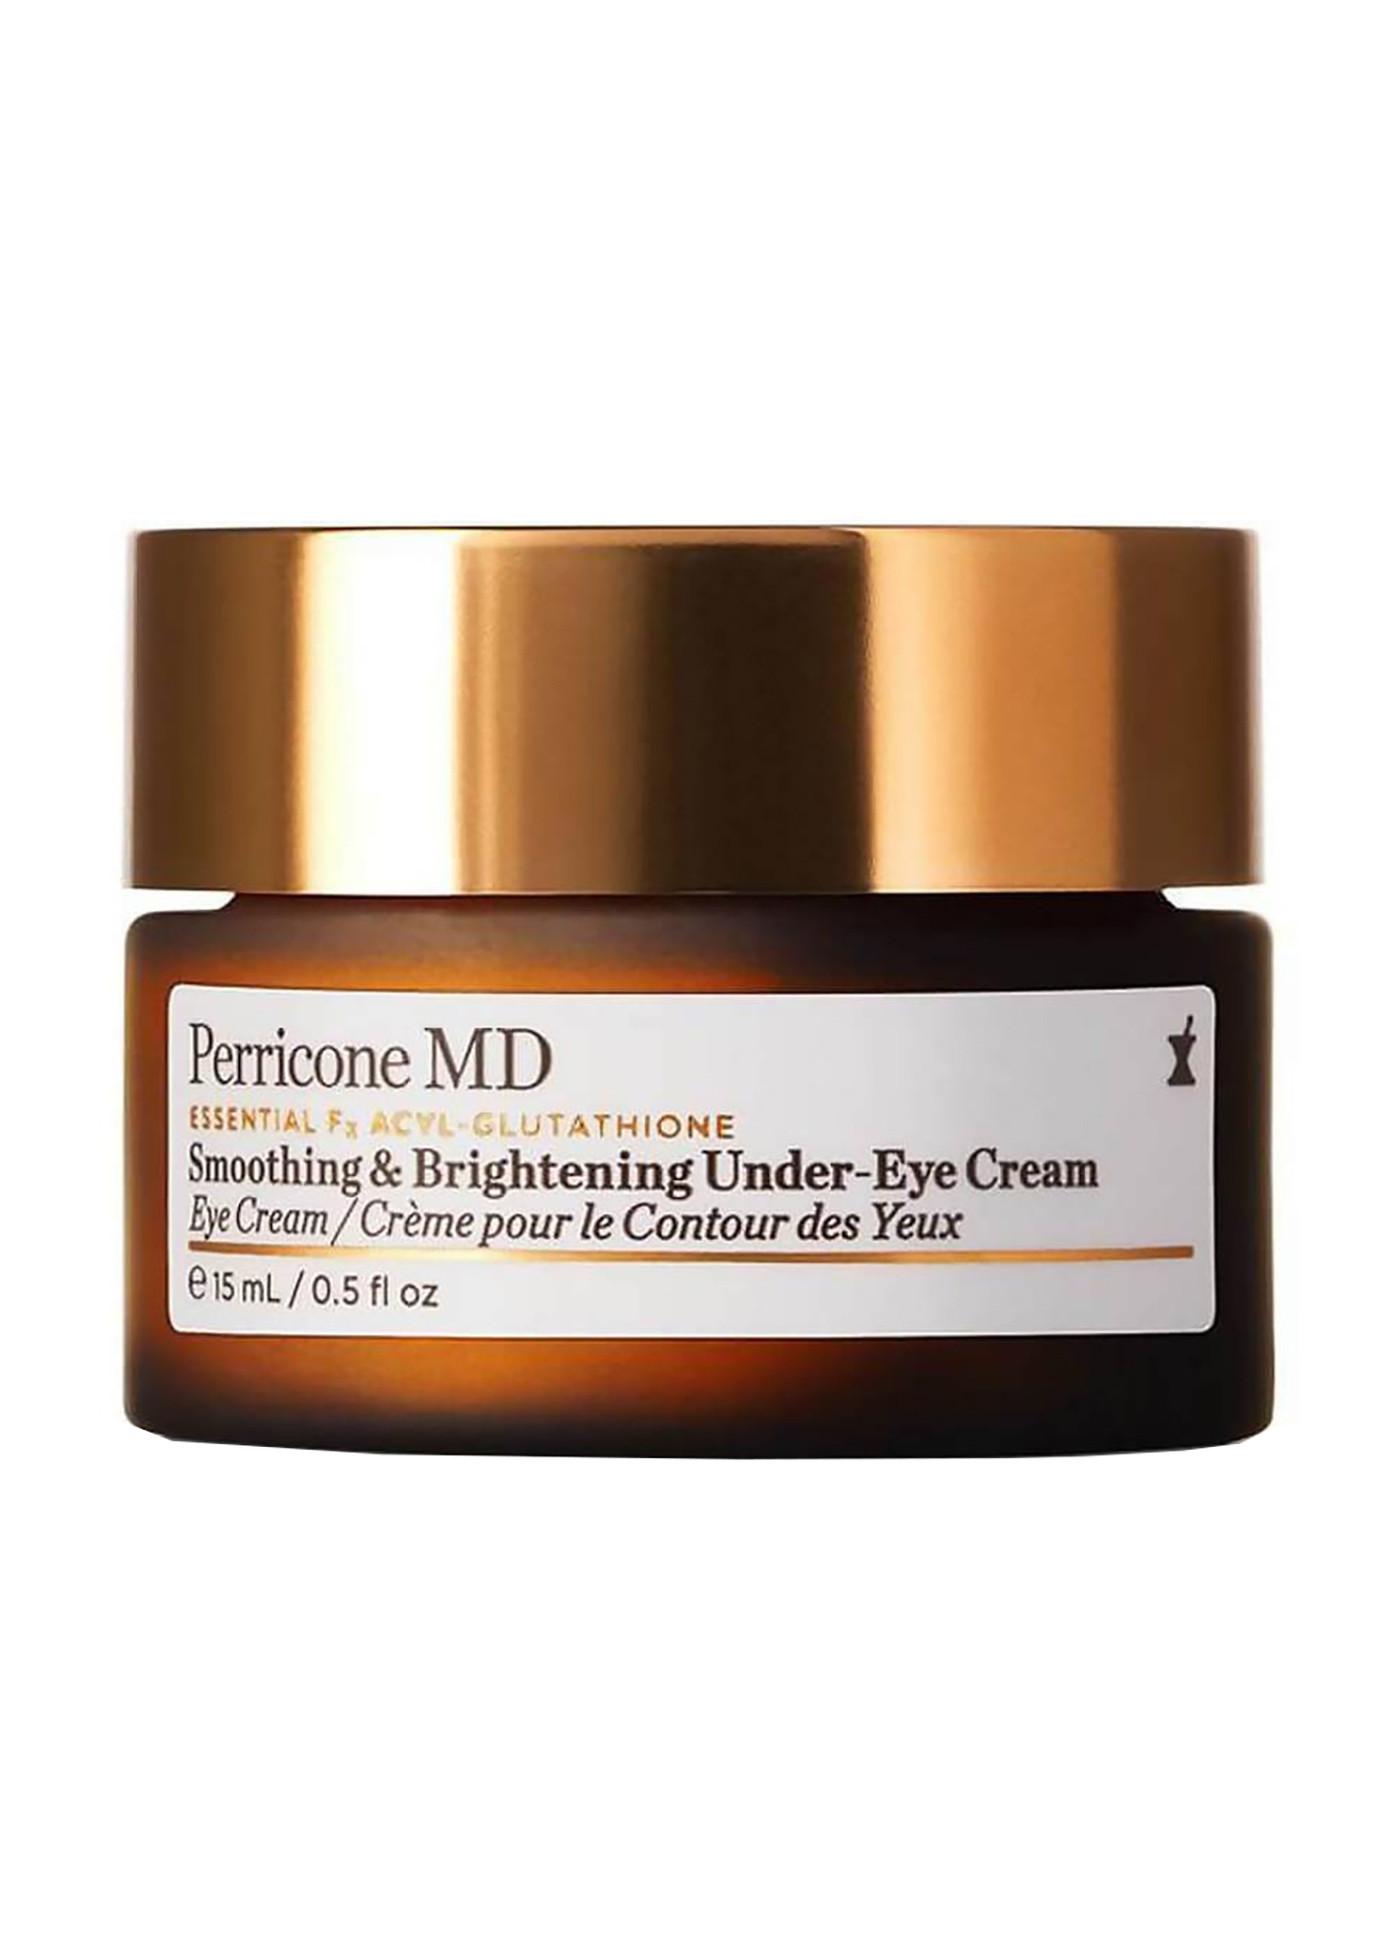   Soin des yeux Essential Fx Acyl-Glutathione Smoothing & Brightening Under-Eye Cream 